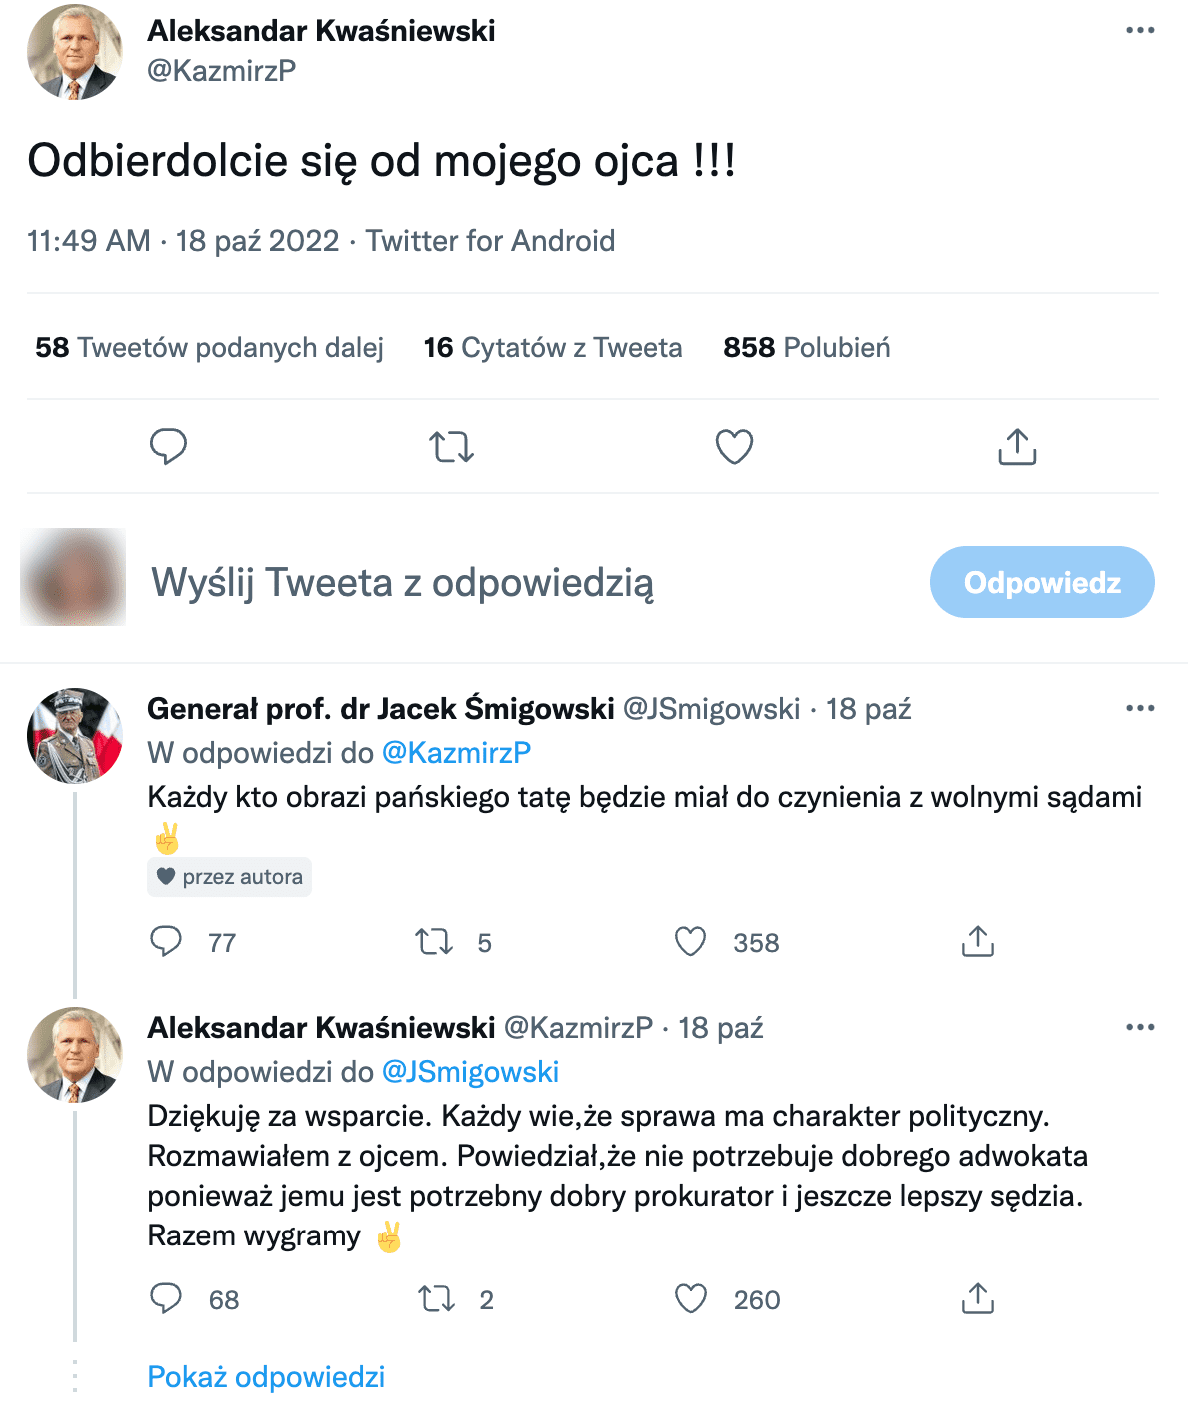 Zrzut ekranu ze wpisu na Twitterze udostępnionego rzekomo przez Aleksandra Kwaśniewskiego.